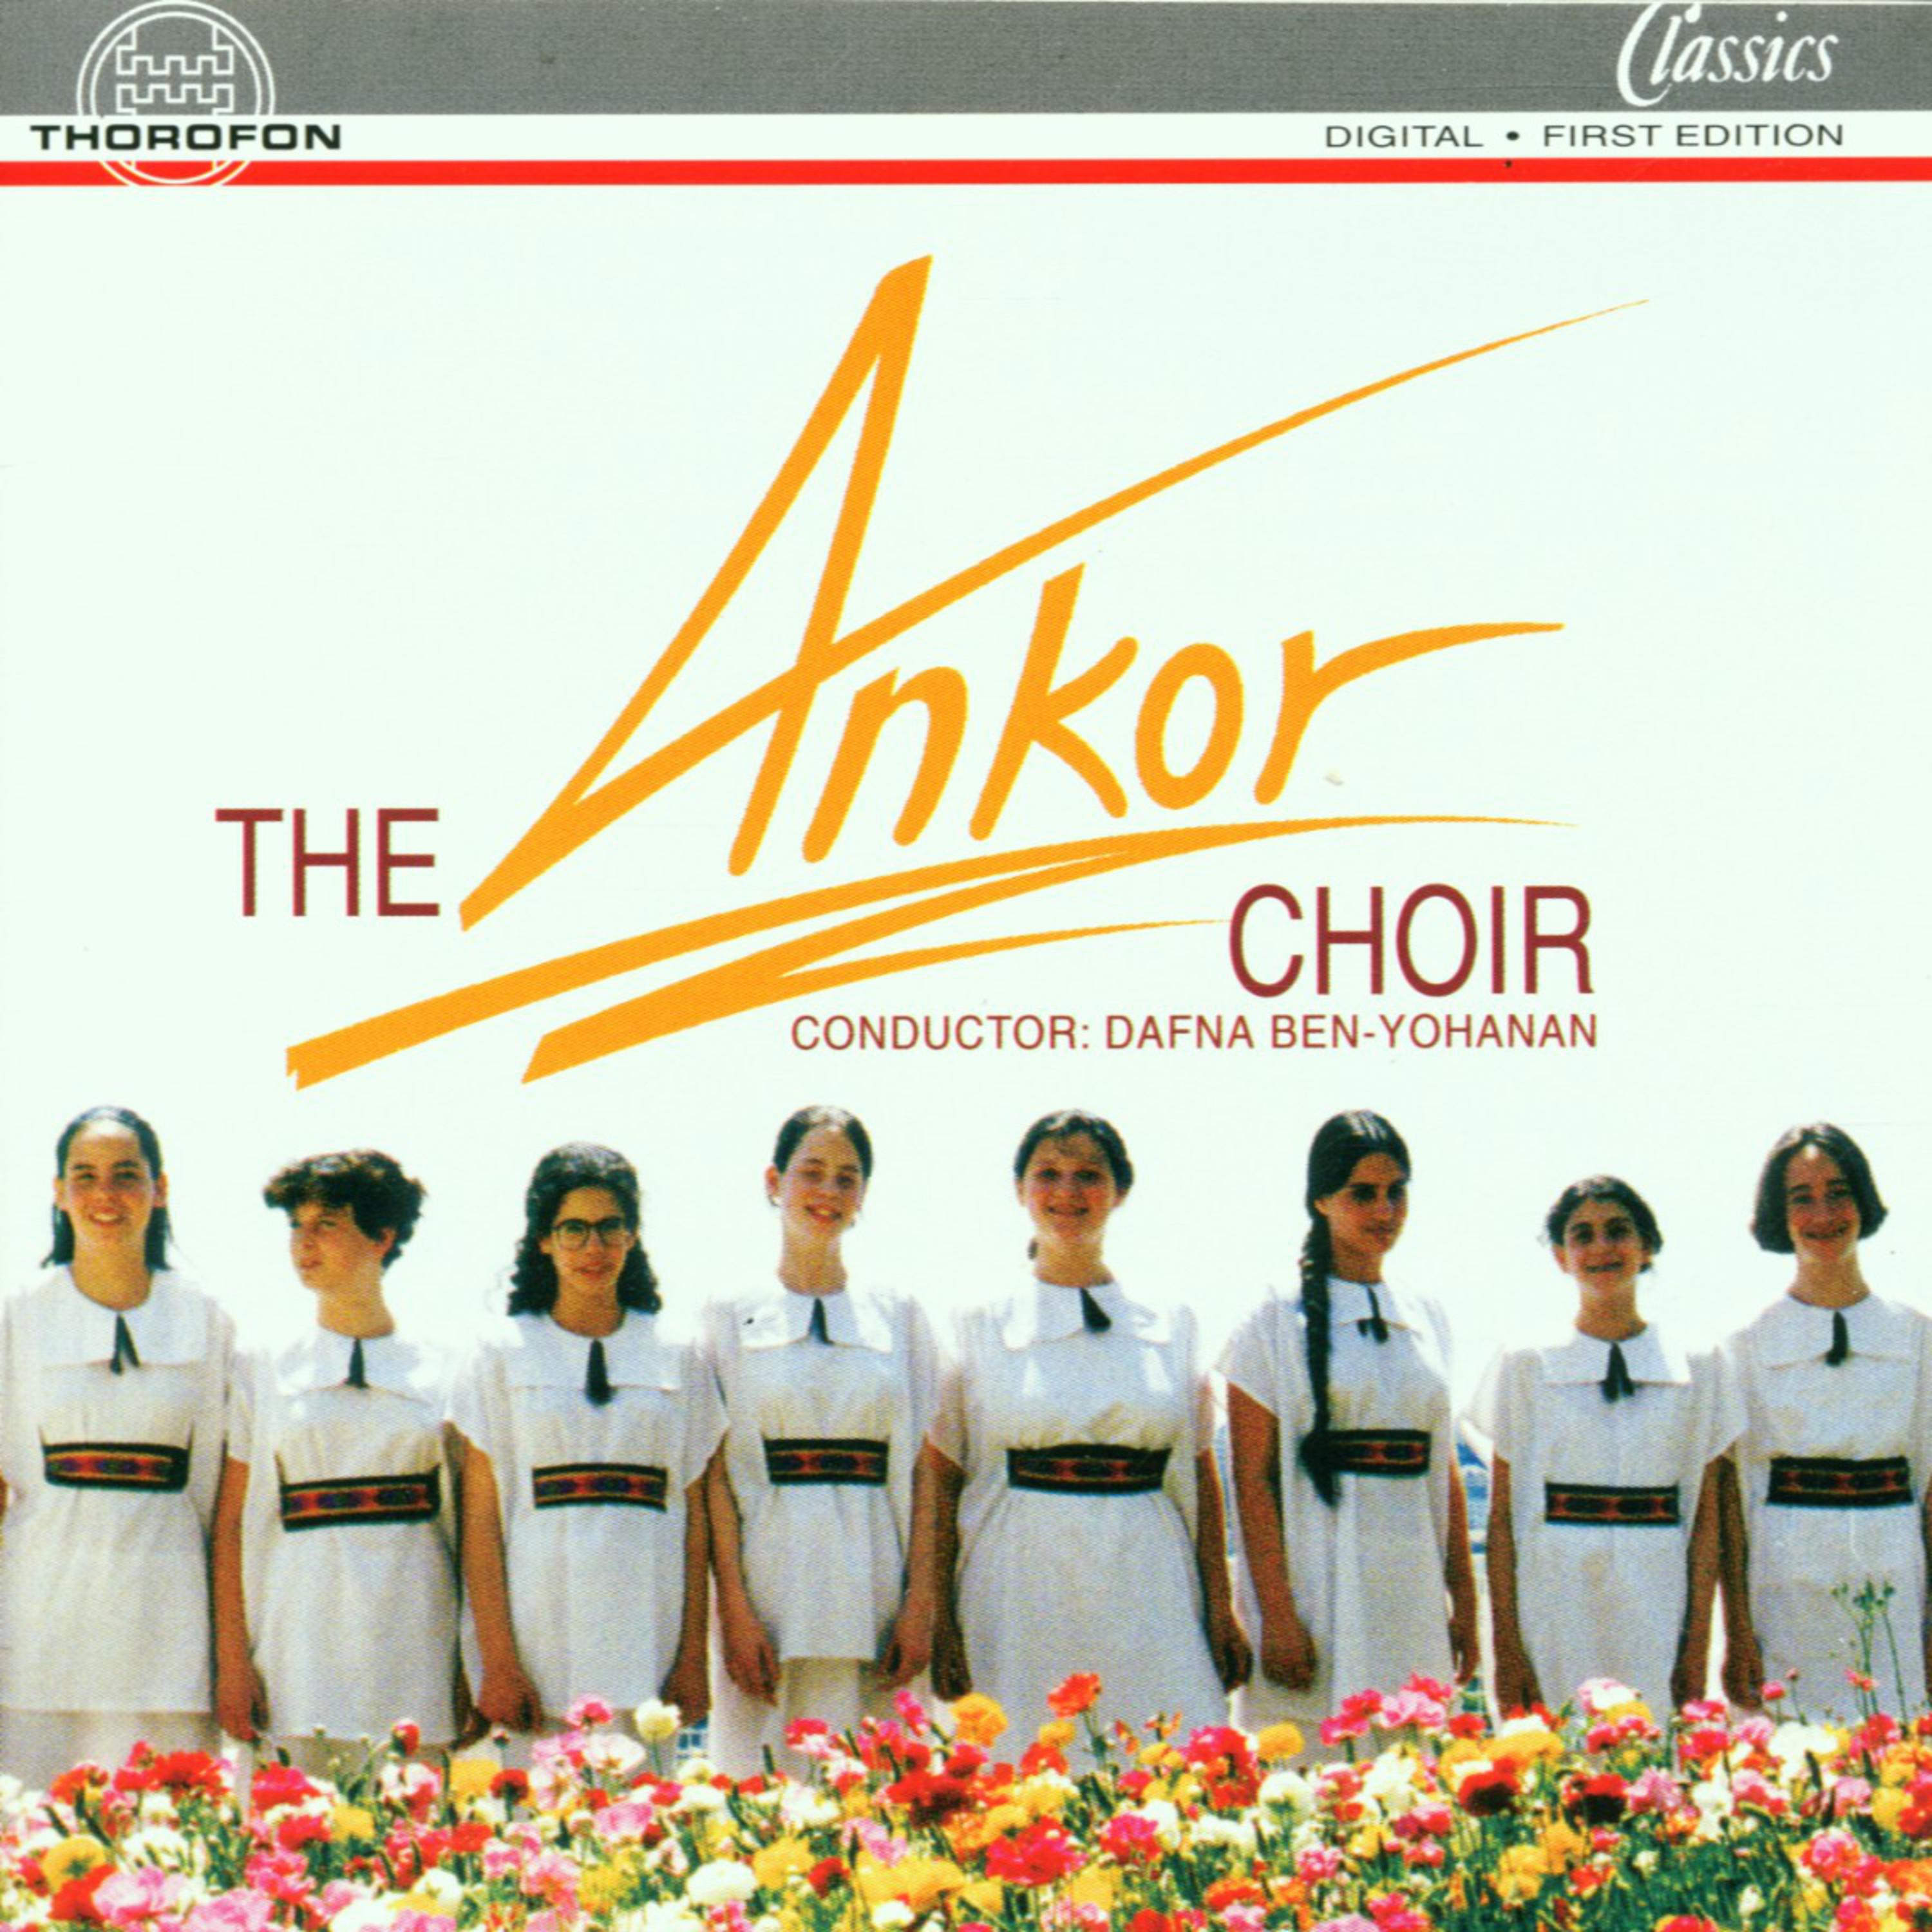 The Ankor Choir - Ave Venum, op. 65, Nr. 1